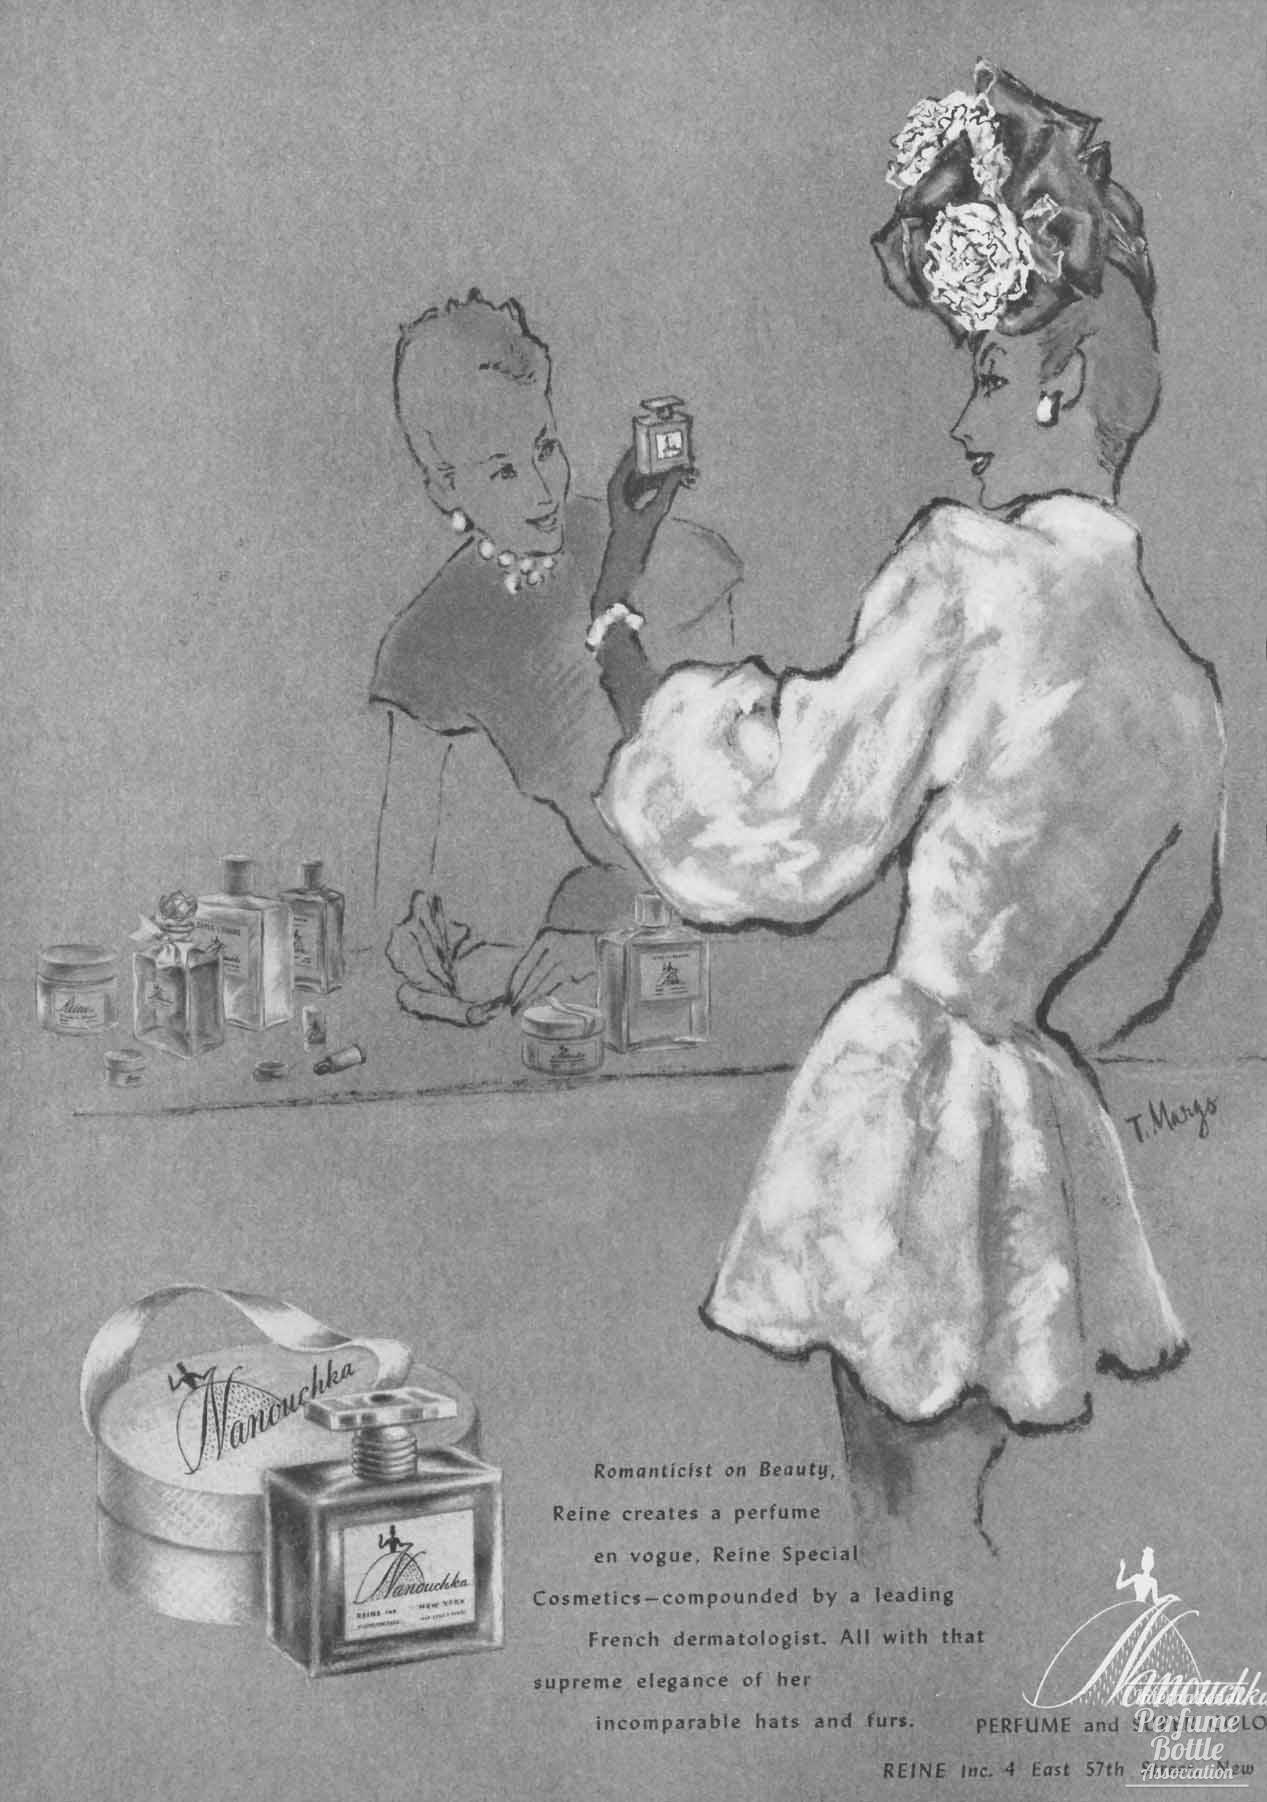 "Nanouchka" by Reine Advertisement - 1945